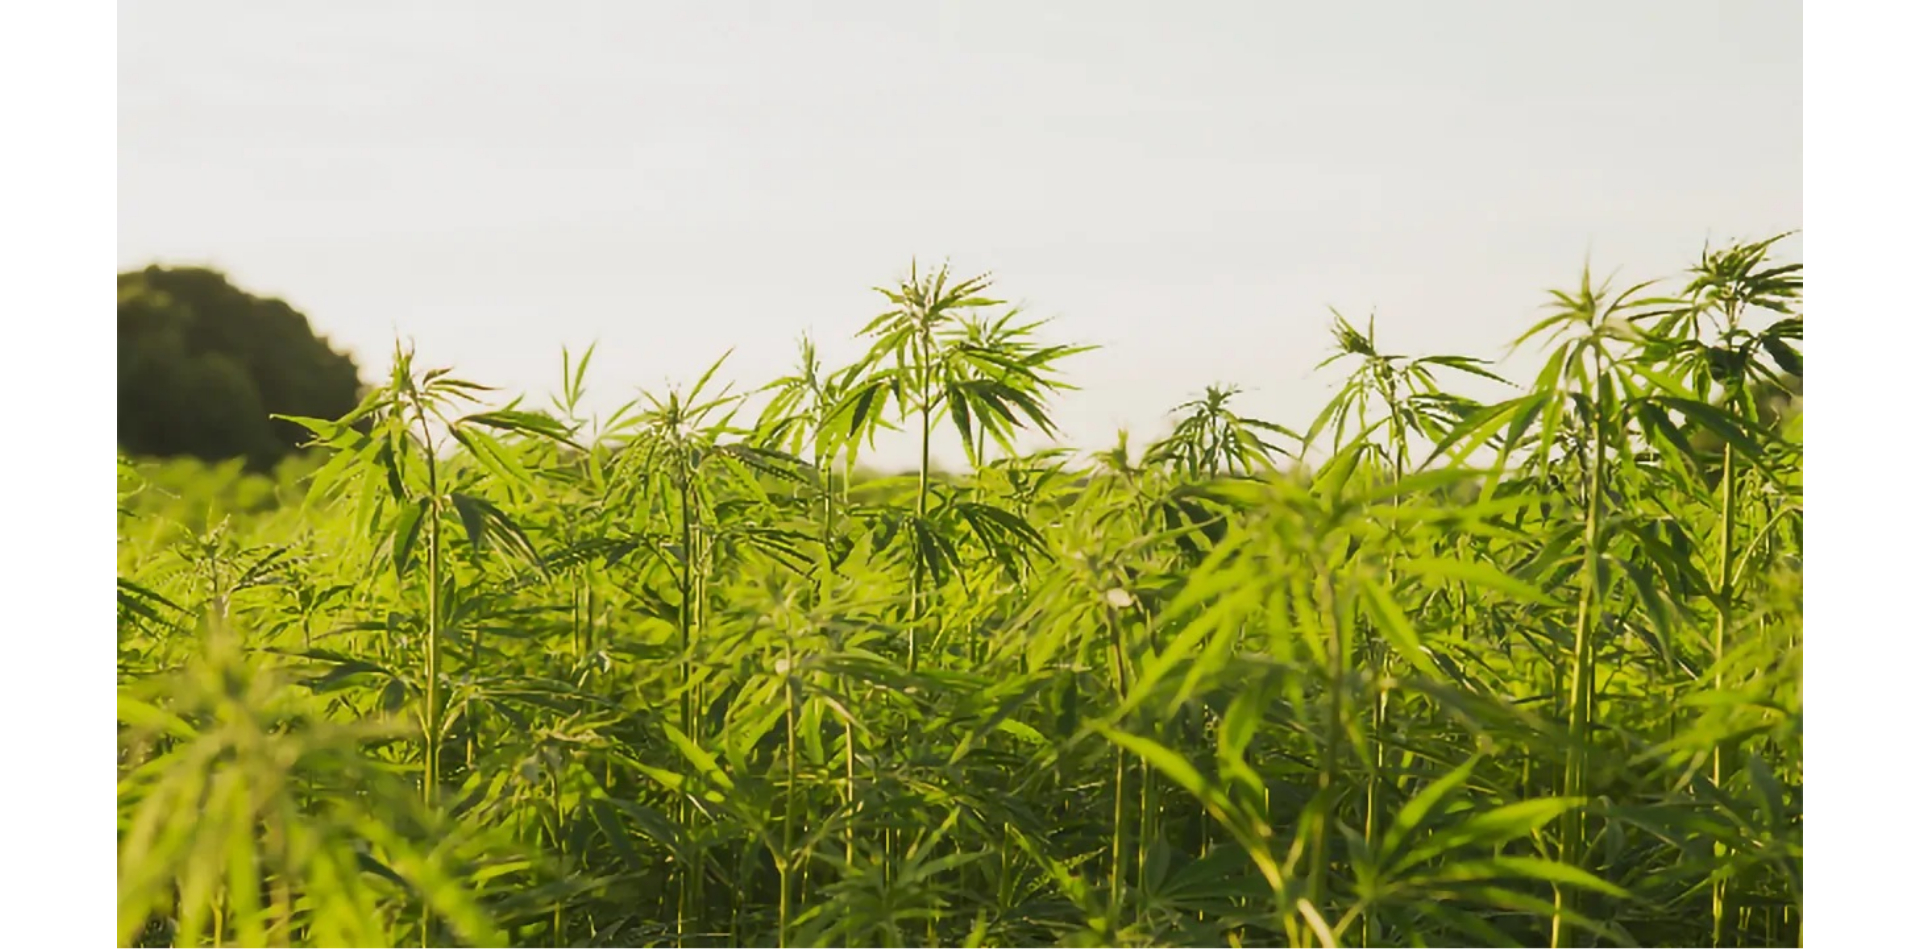 Bundesgericht ordnet DEA an, die Untätigkeit bei Anträgen auf Cannabisanbau zu erklären